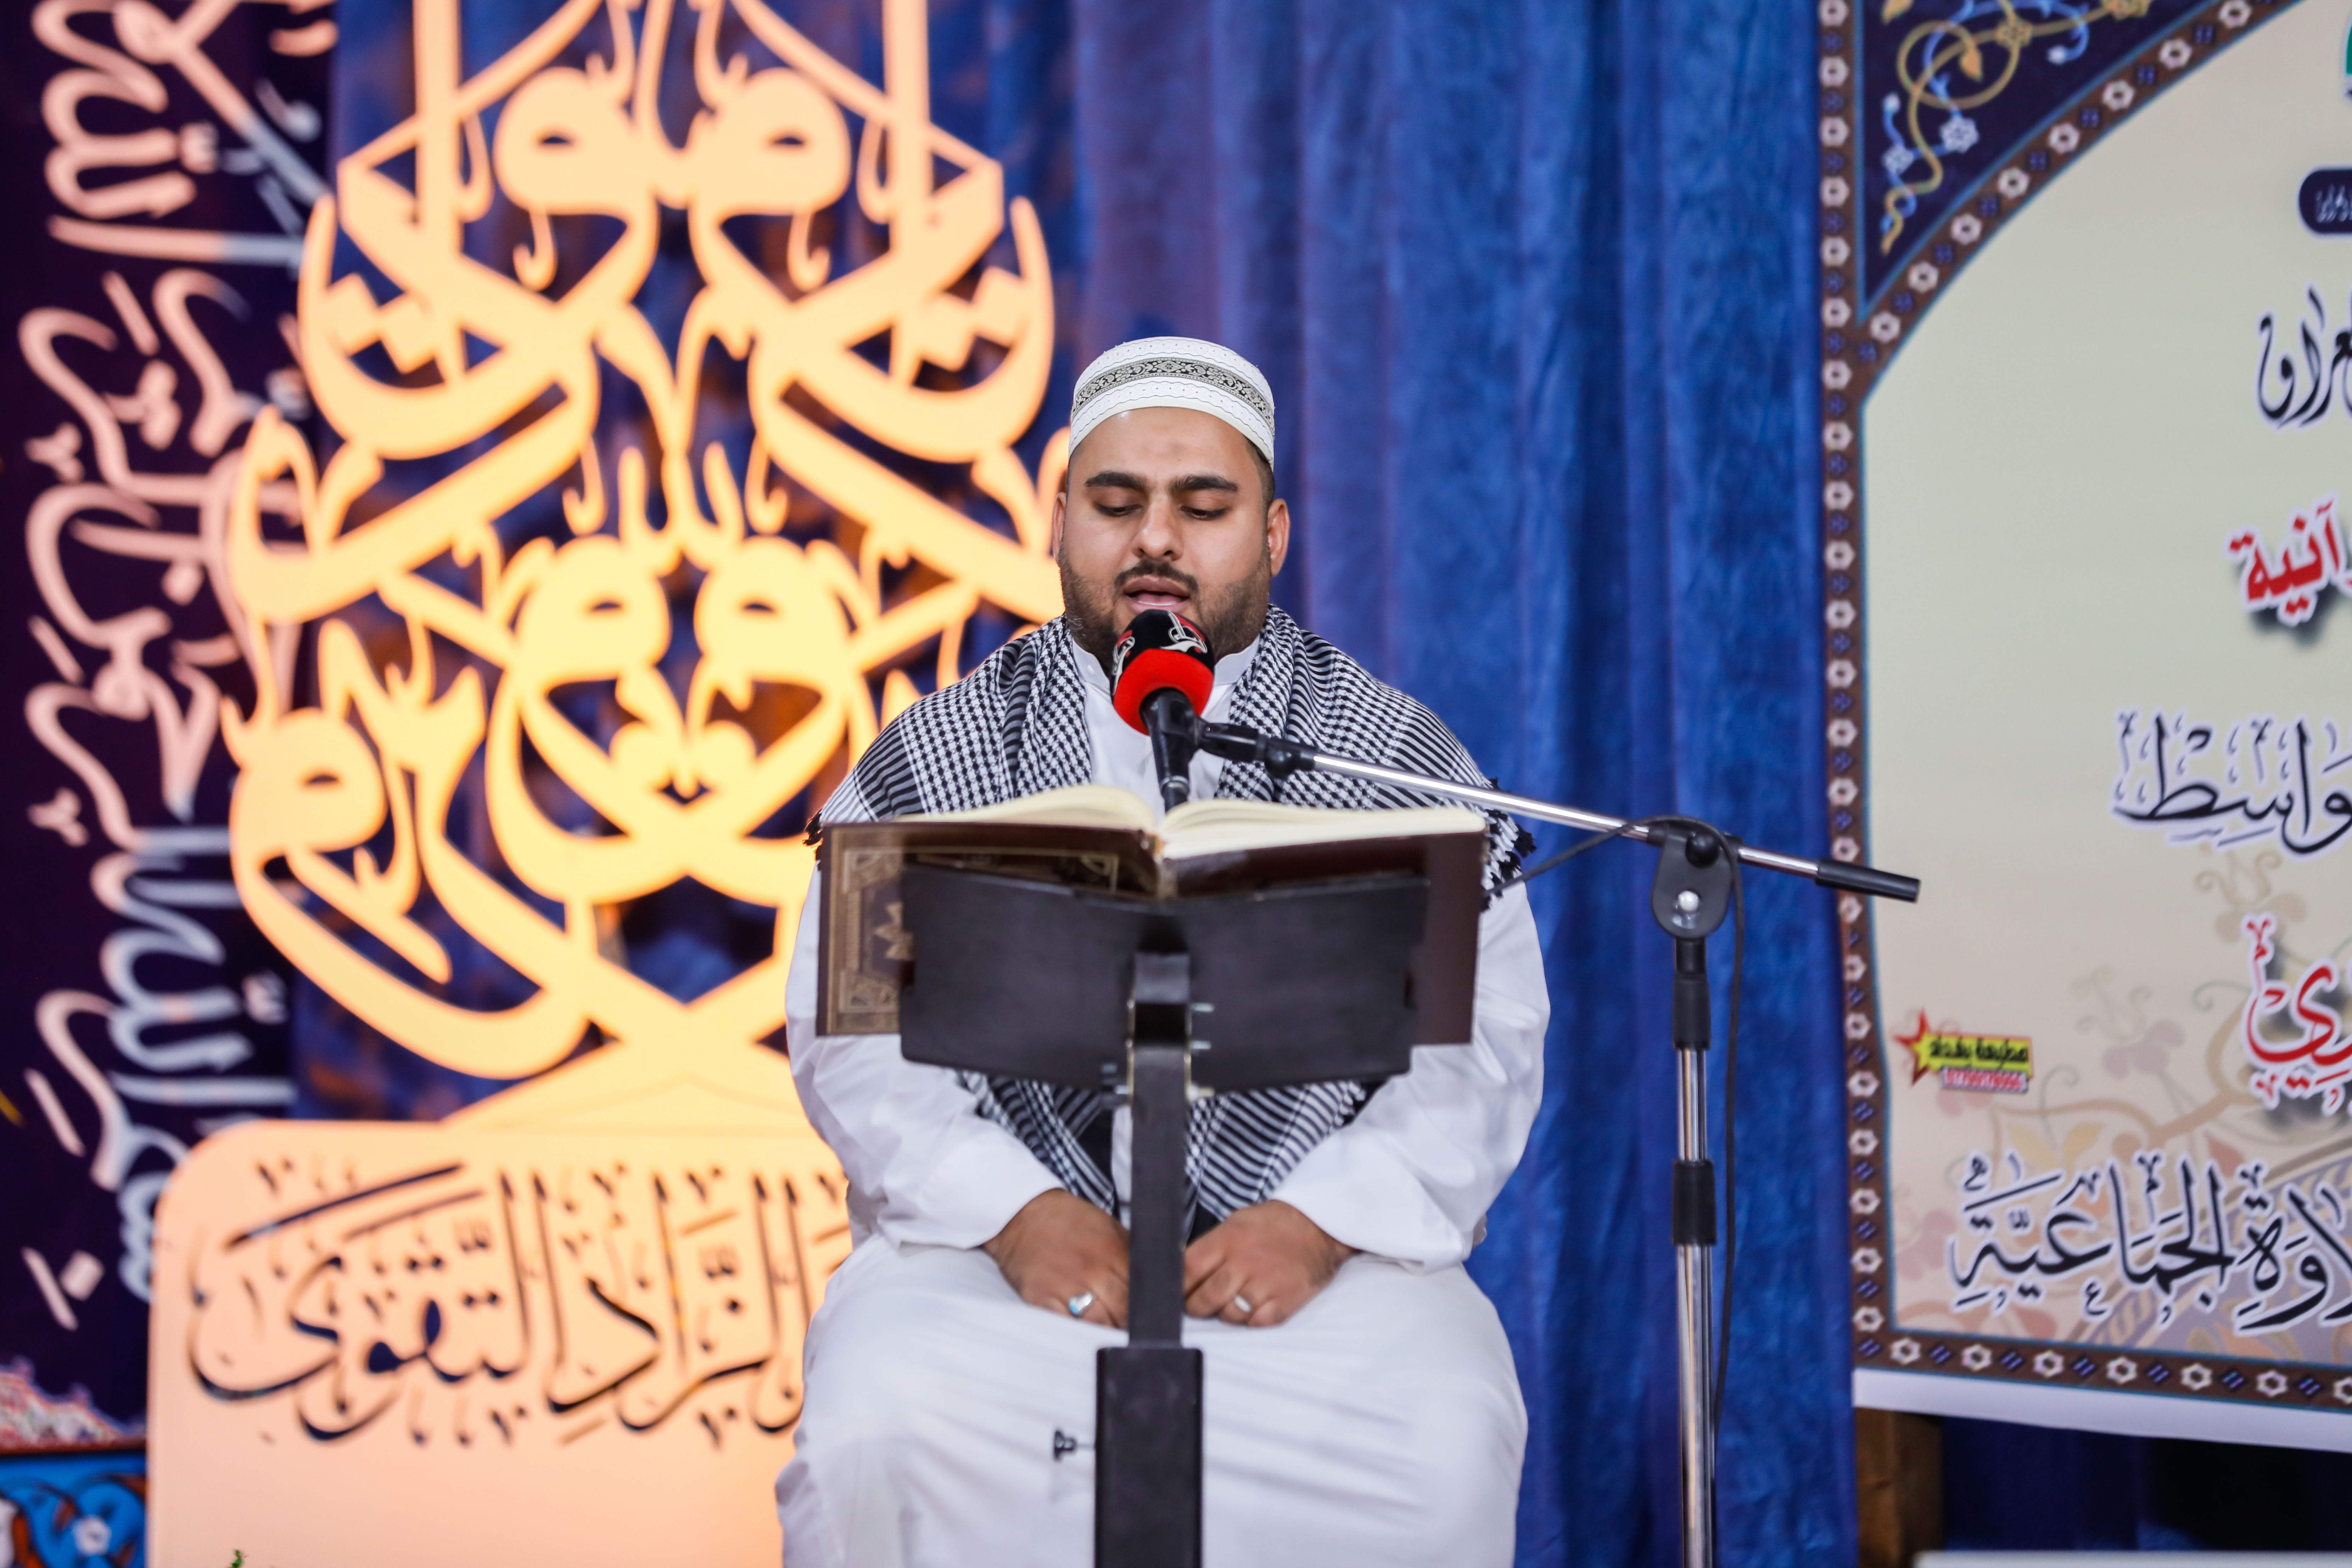 بدعوة رسمية معهد القرآن الكريم يمثل العتبة العباسية المقدسة في افتتاح مسابقة الحاج أبو مهدي القرآنية